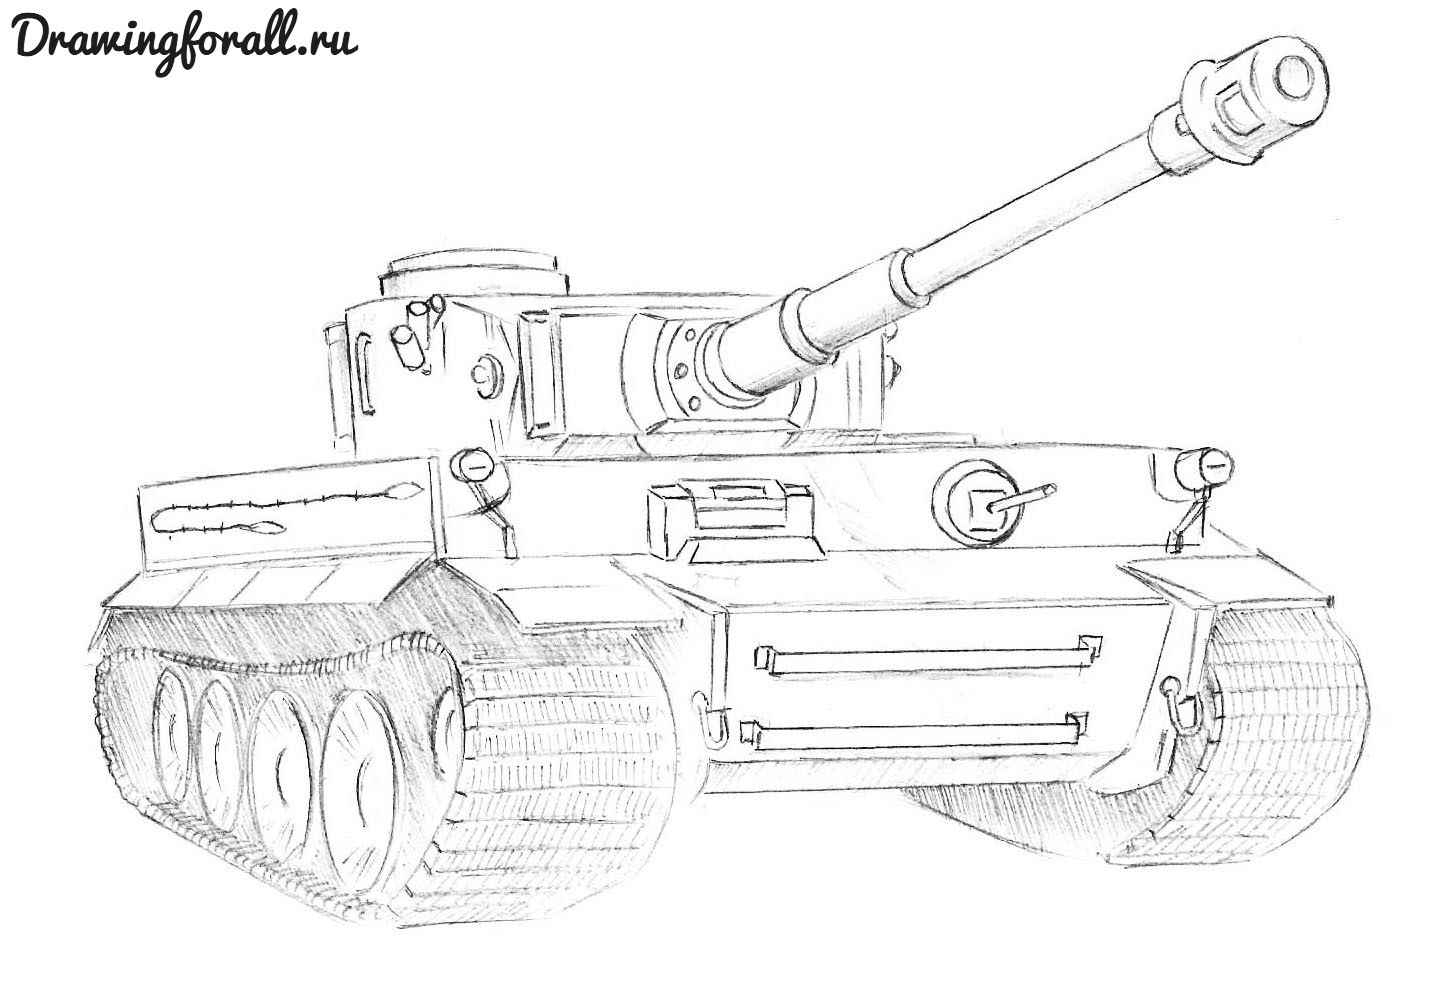 Как нарисовать ребенку танк? Как нарисовать танк Е-100, Тигр, ИС-7 поэтапно карандашом?